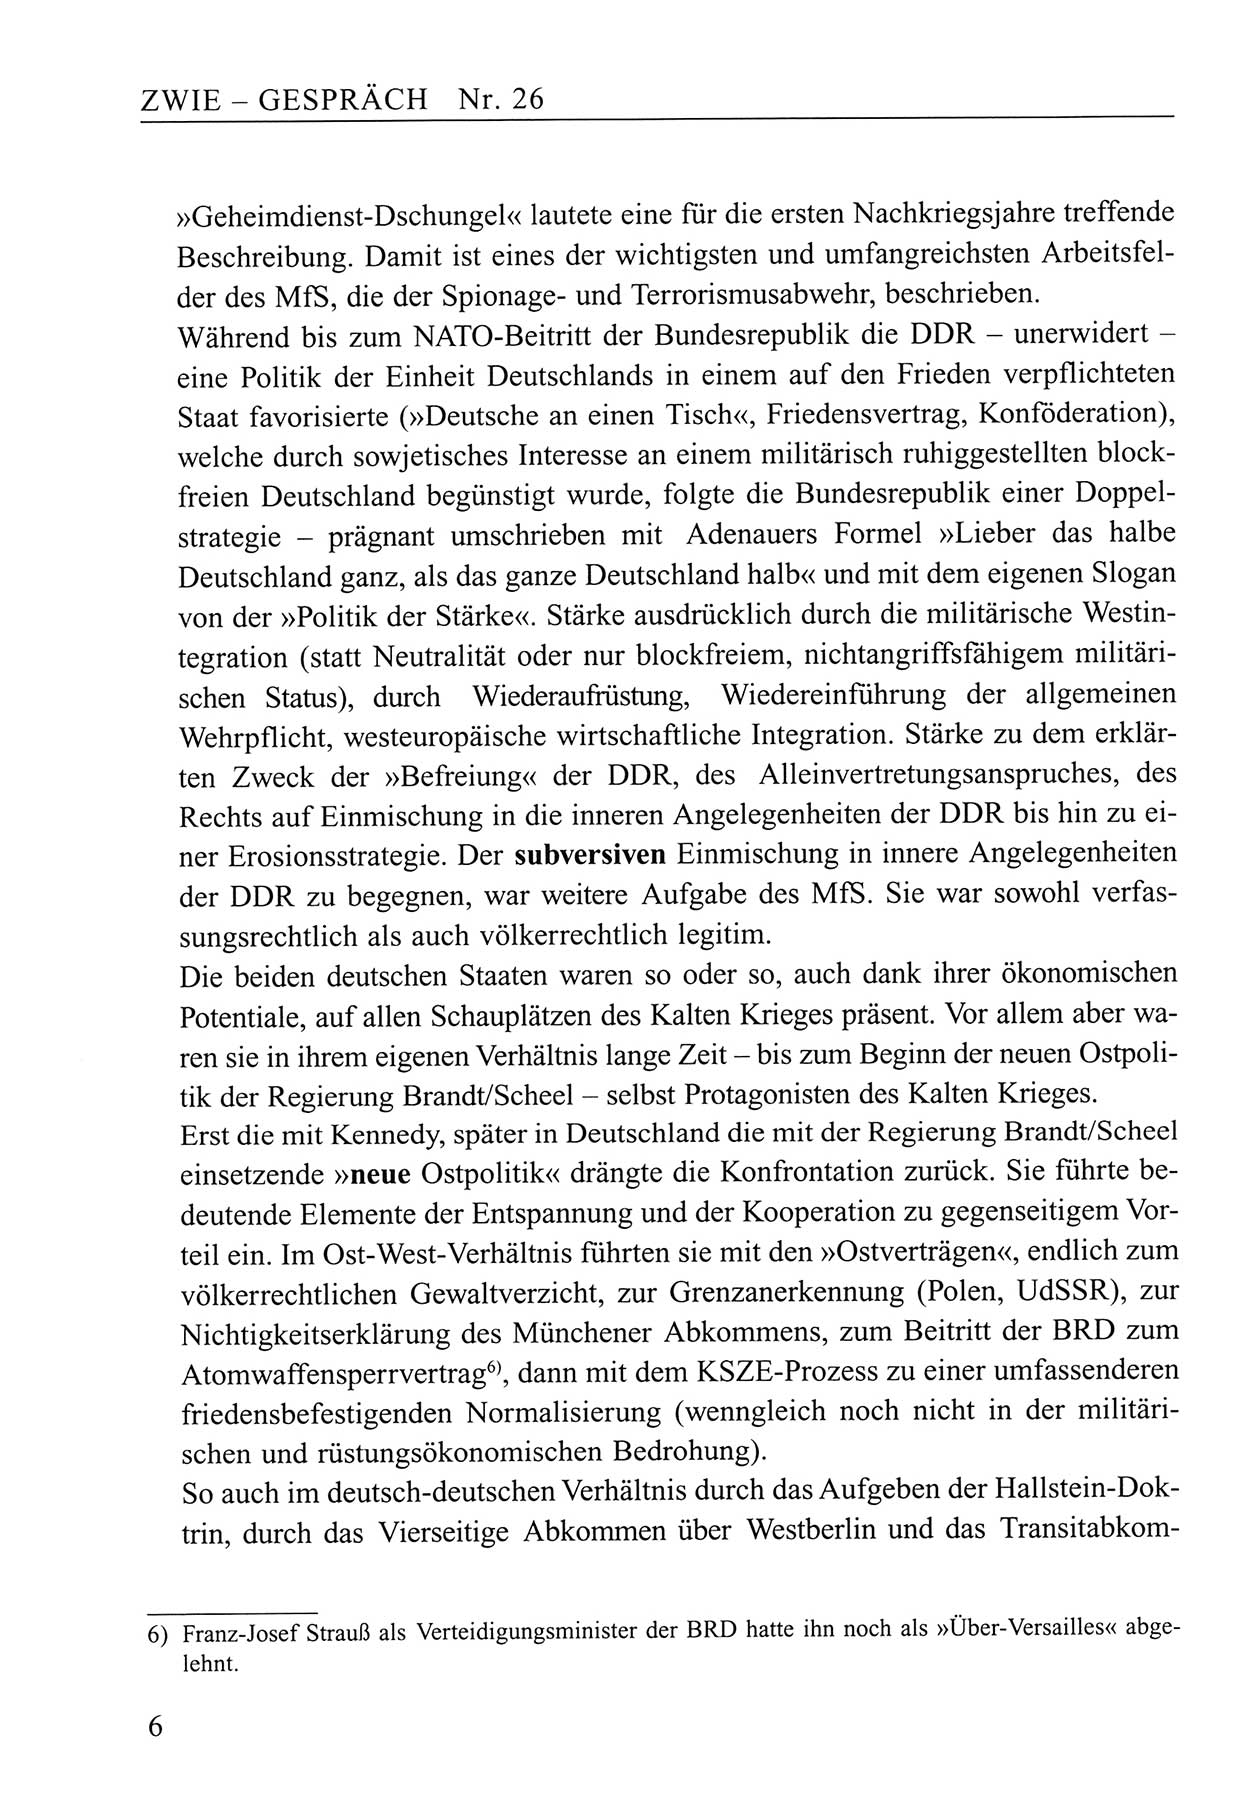 Zwie-Gespräch, Beiträge zum Umgang mit der Staatssicherheits-Vergangenheit [Deutsche Demokratische Republik (DDR)], Ausgabe Nr. 26, Berlin 1995, Seite 6 (Zwie-Gespr. Ausg. 26 1995, S. 6)